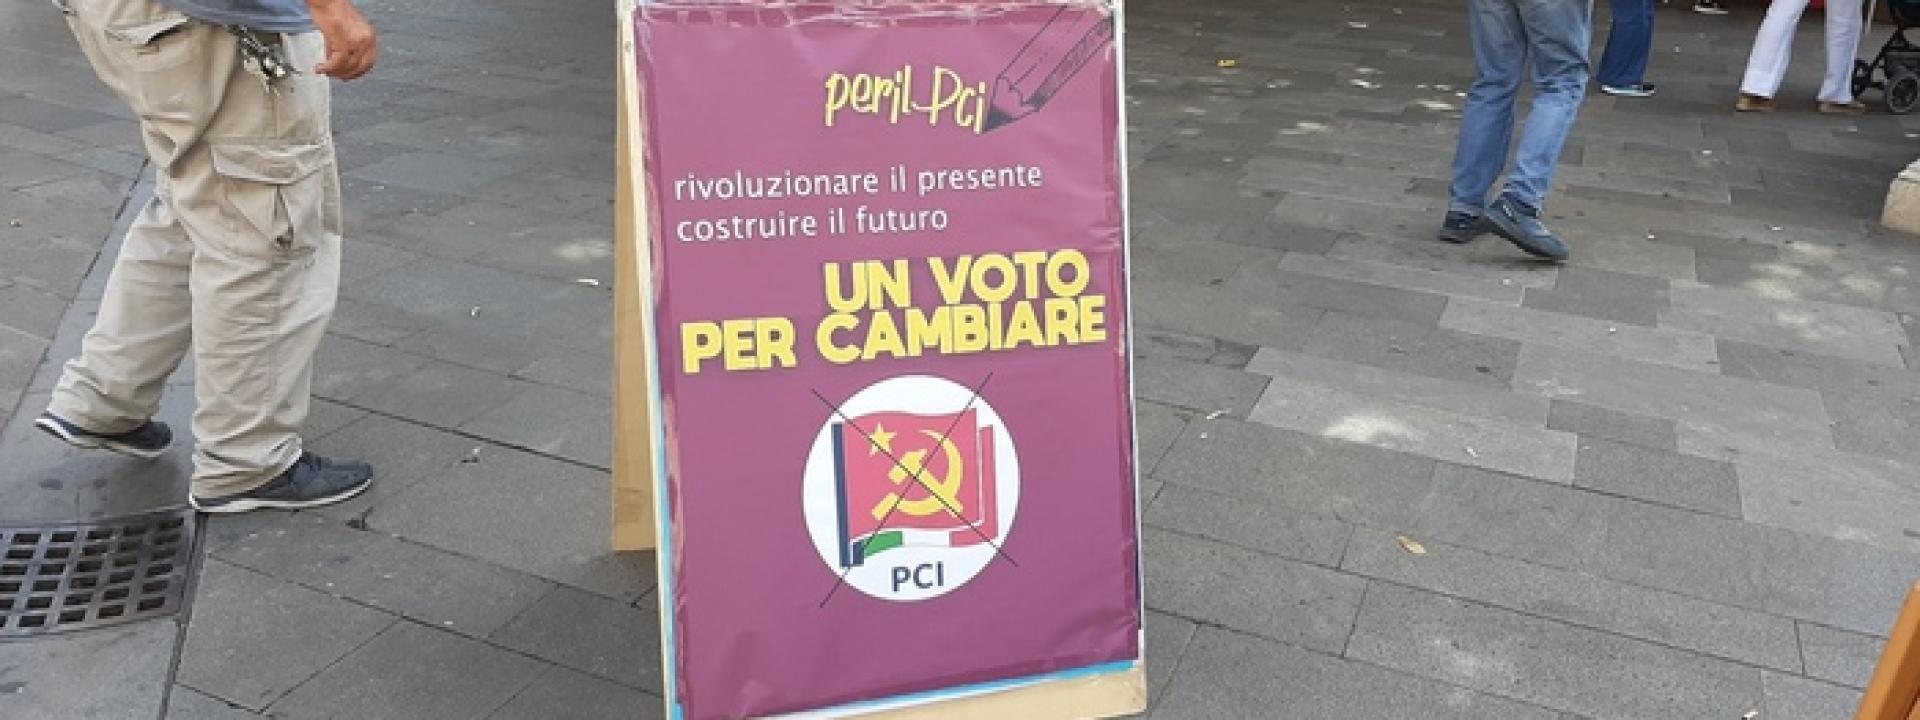 Nelle Marche e in altre sette regioni torna sulla scheda lo storico simbolo del Partito Comunista Italiano